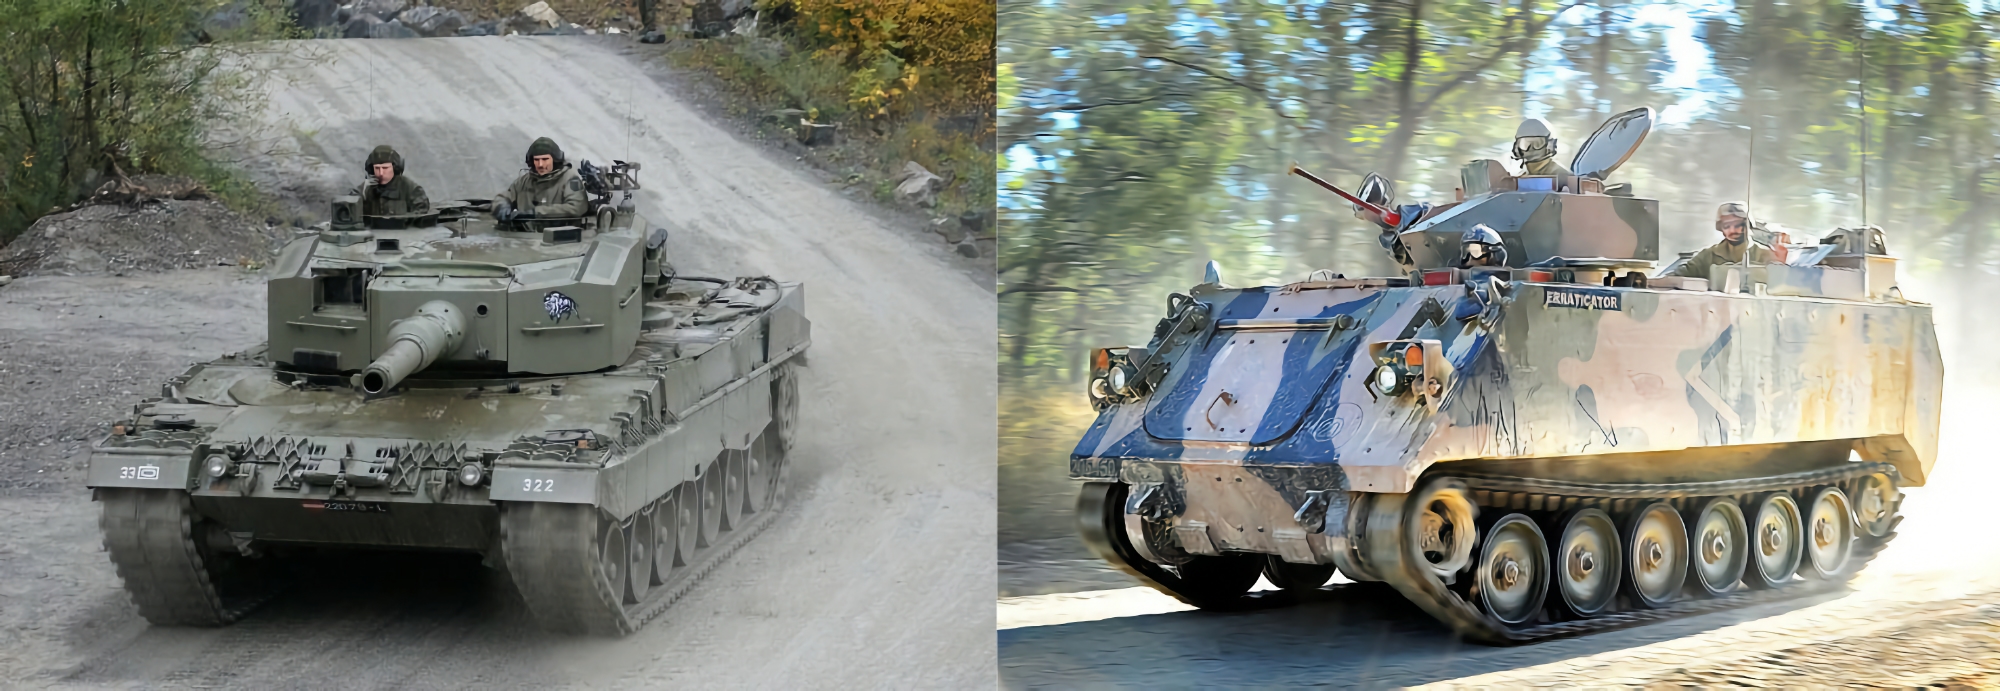 Іспанія почала передачу Україні танків Leopard 2A4 і бронетранспортерів M113